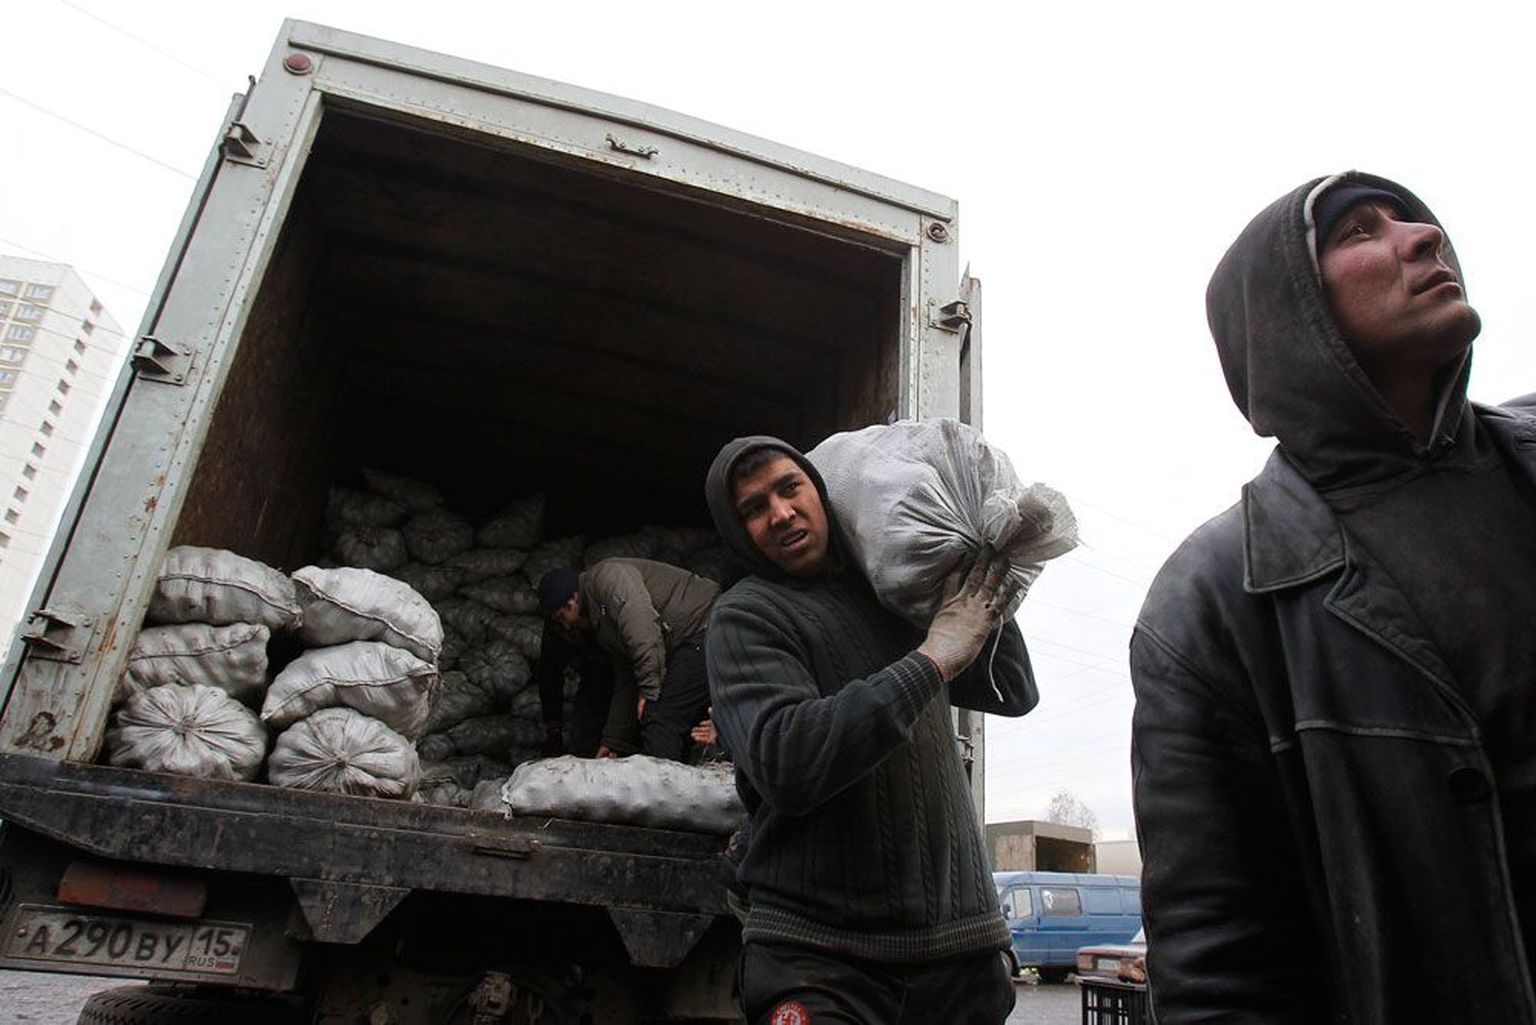 Võõrtöölised Moskva turul kartulikotte laadimas. Kuigi venelased neid tihti ei salli, tulevad Kesk-Aasia migrandid sellegipoolest – tadžikkidel, kirgiisidel ja usbekkidel on vaja tööd, Venemaal tööjõudu.